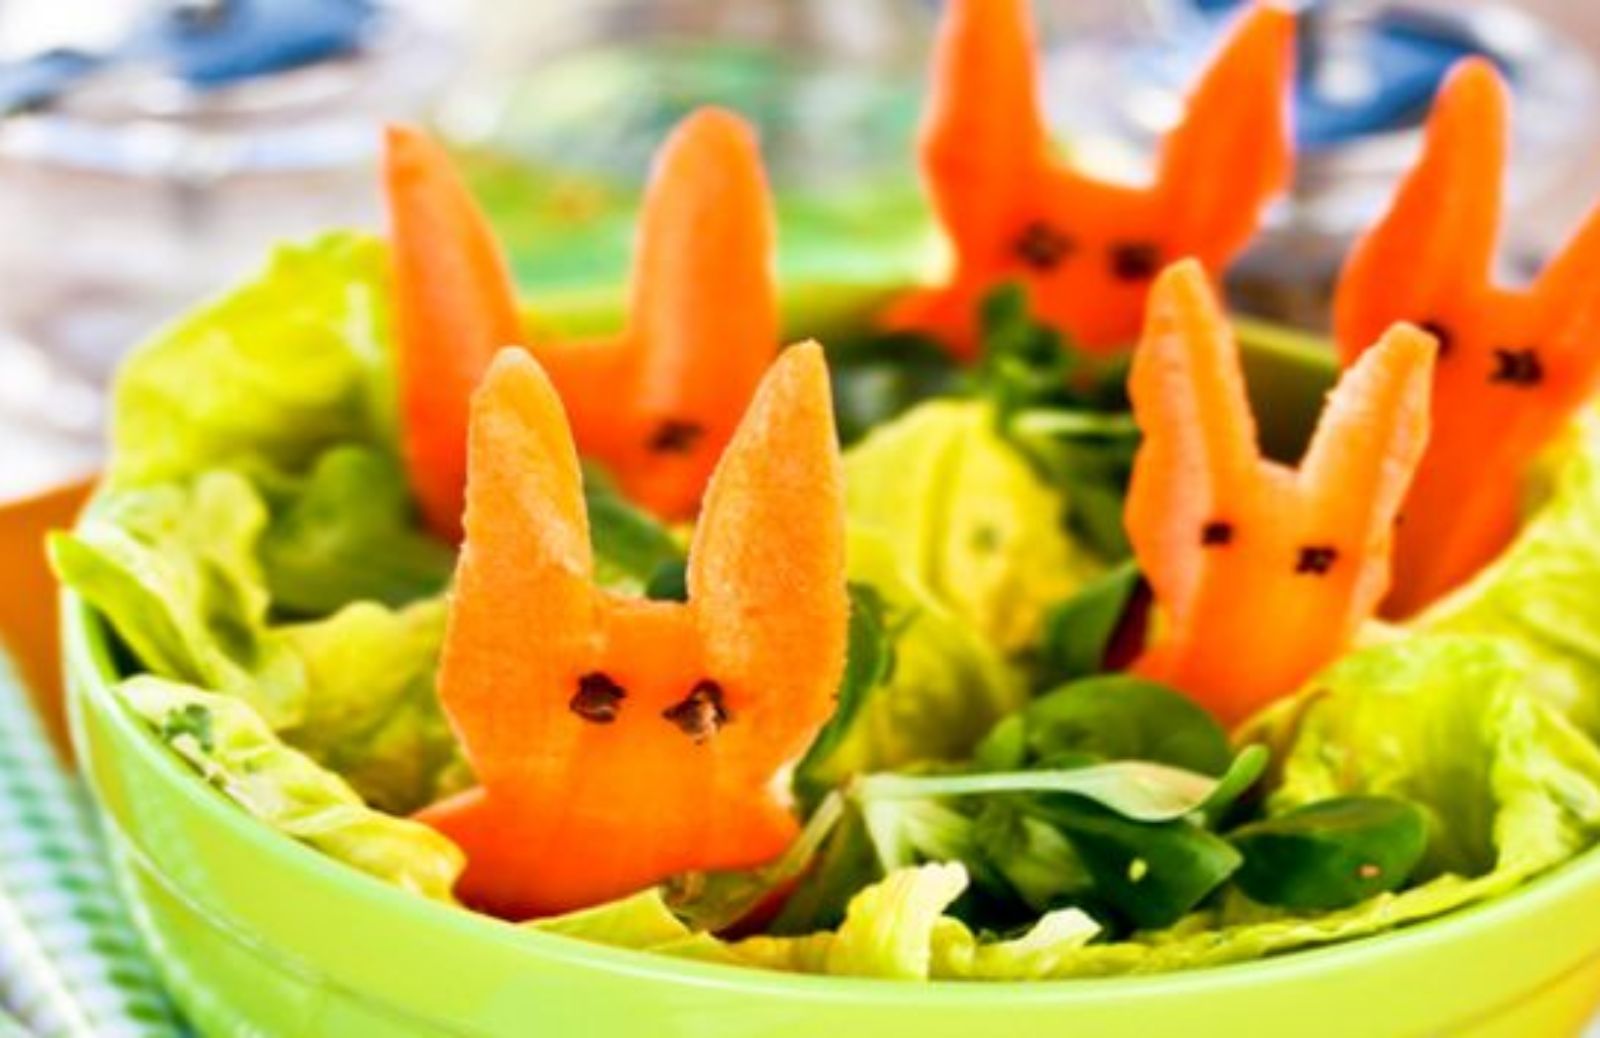 Come fare un'insalata con i coniglietti di carote